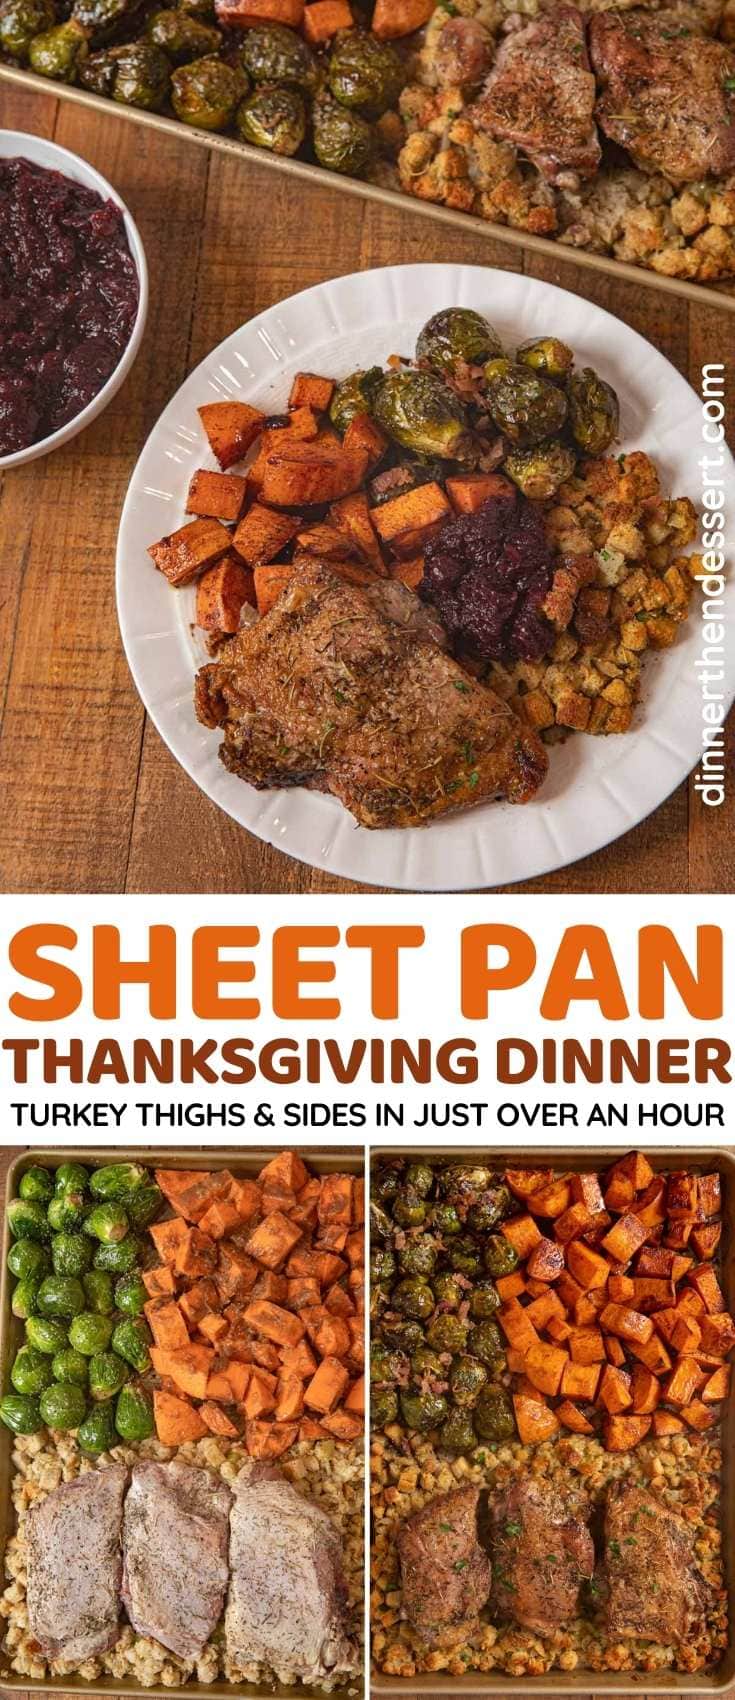 Sheet Pan Thanksgiving Dinner collage